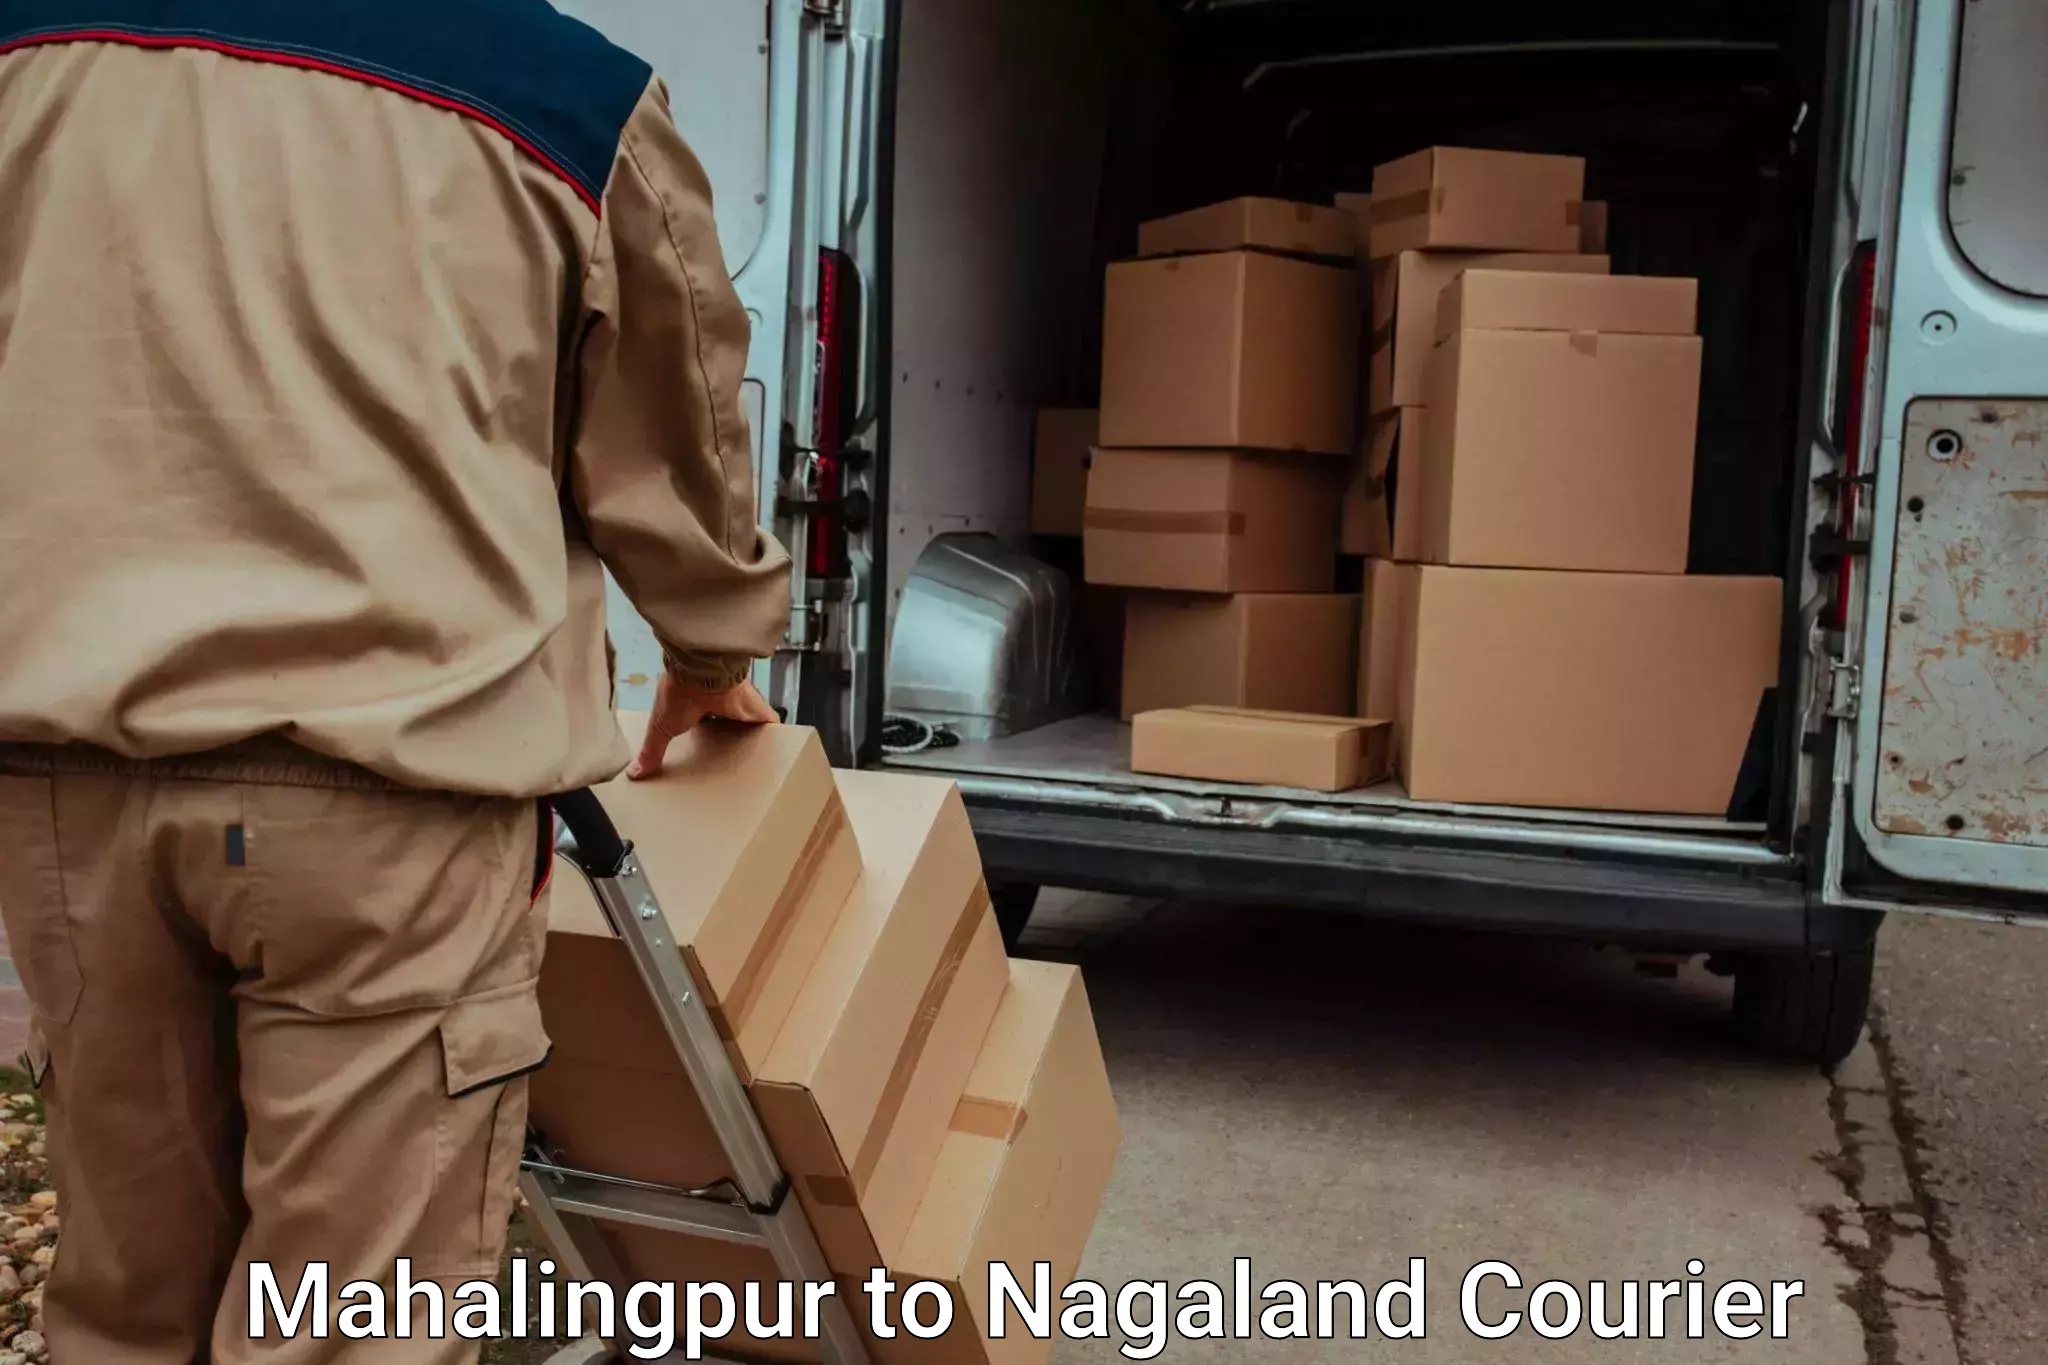 Baggage relocation service Mahalingpur to Nagaland